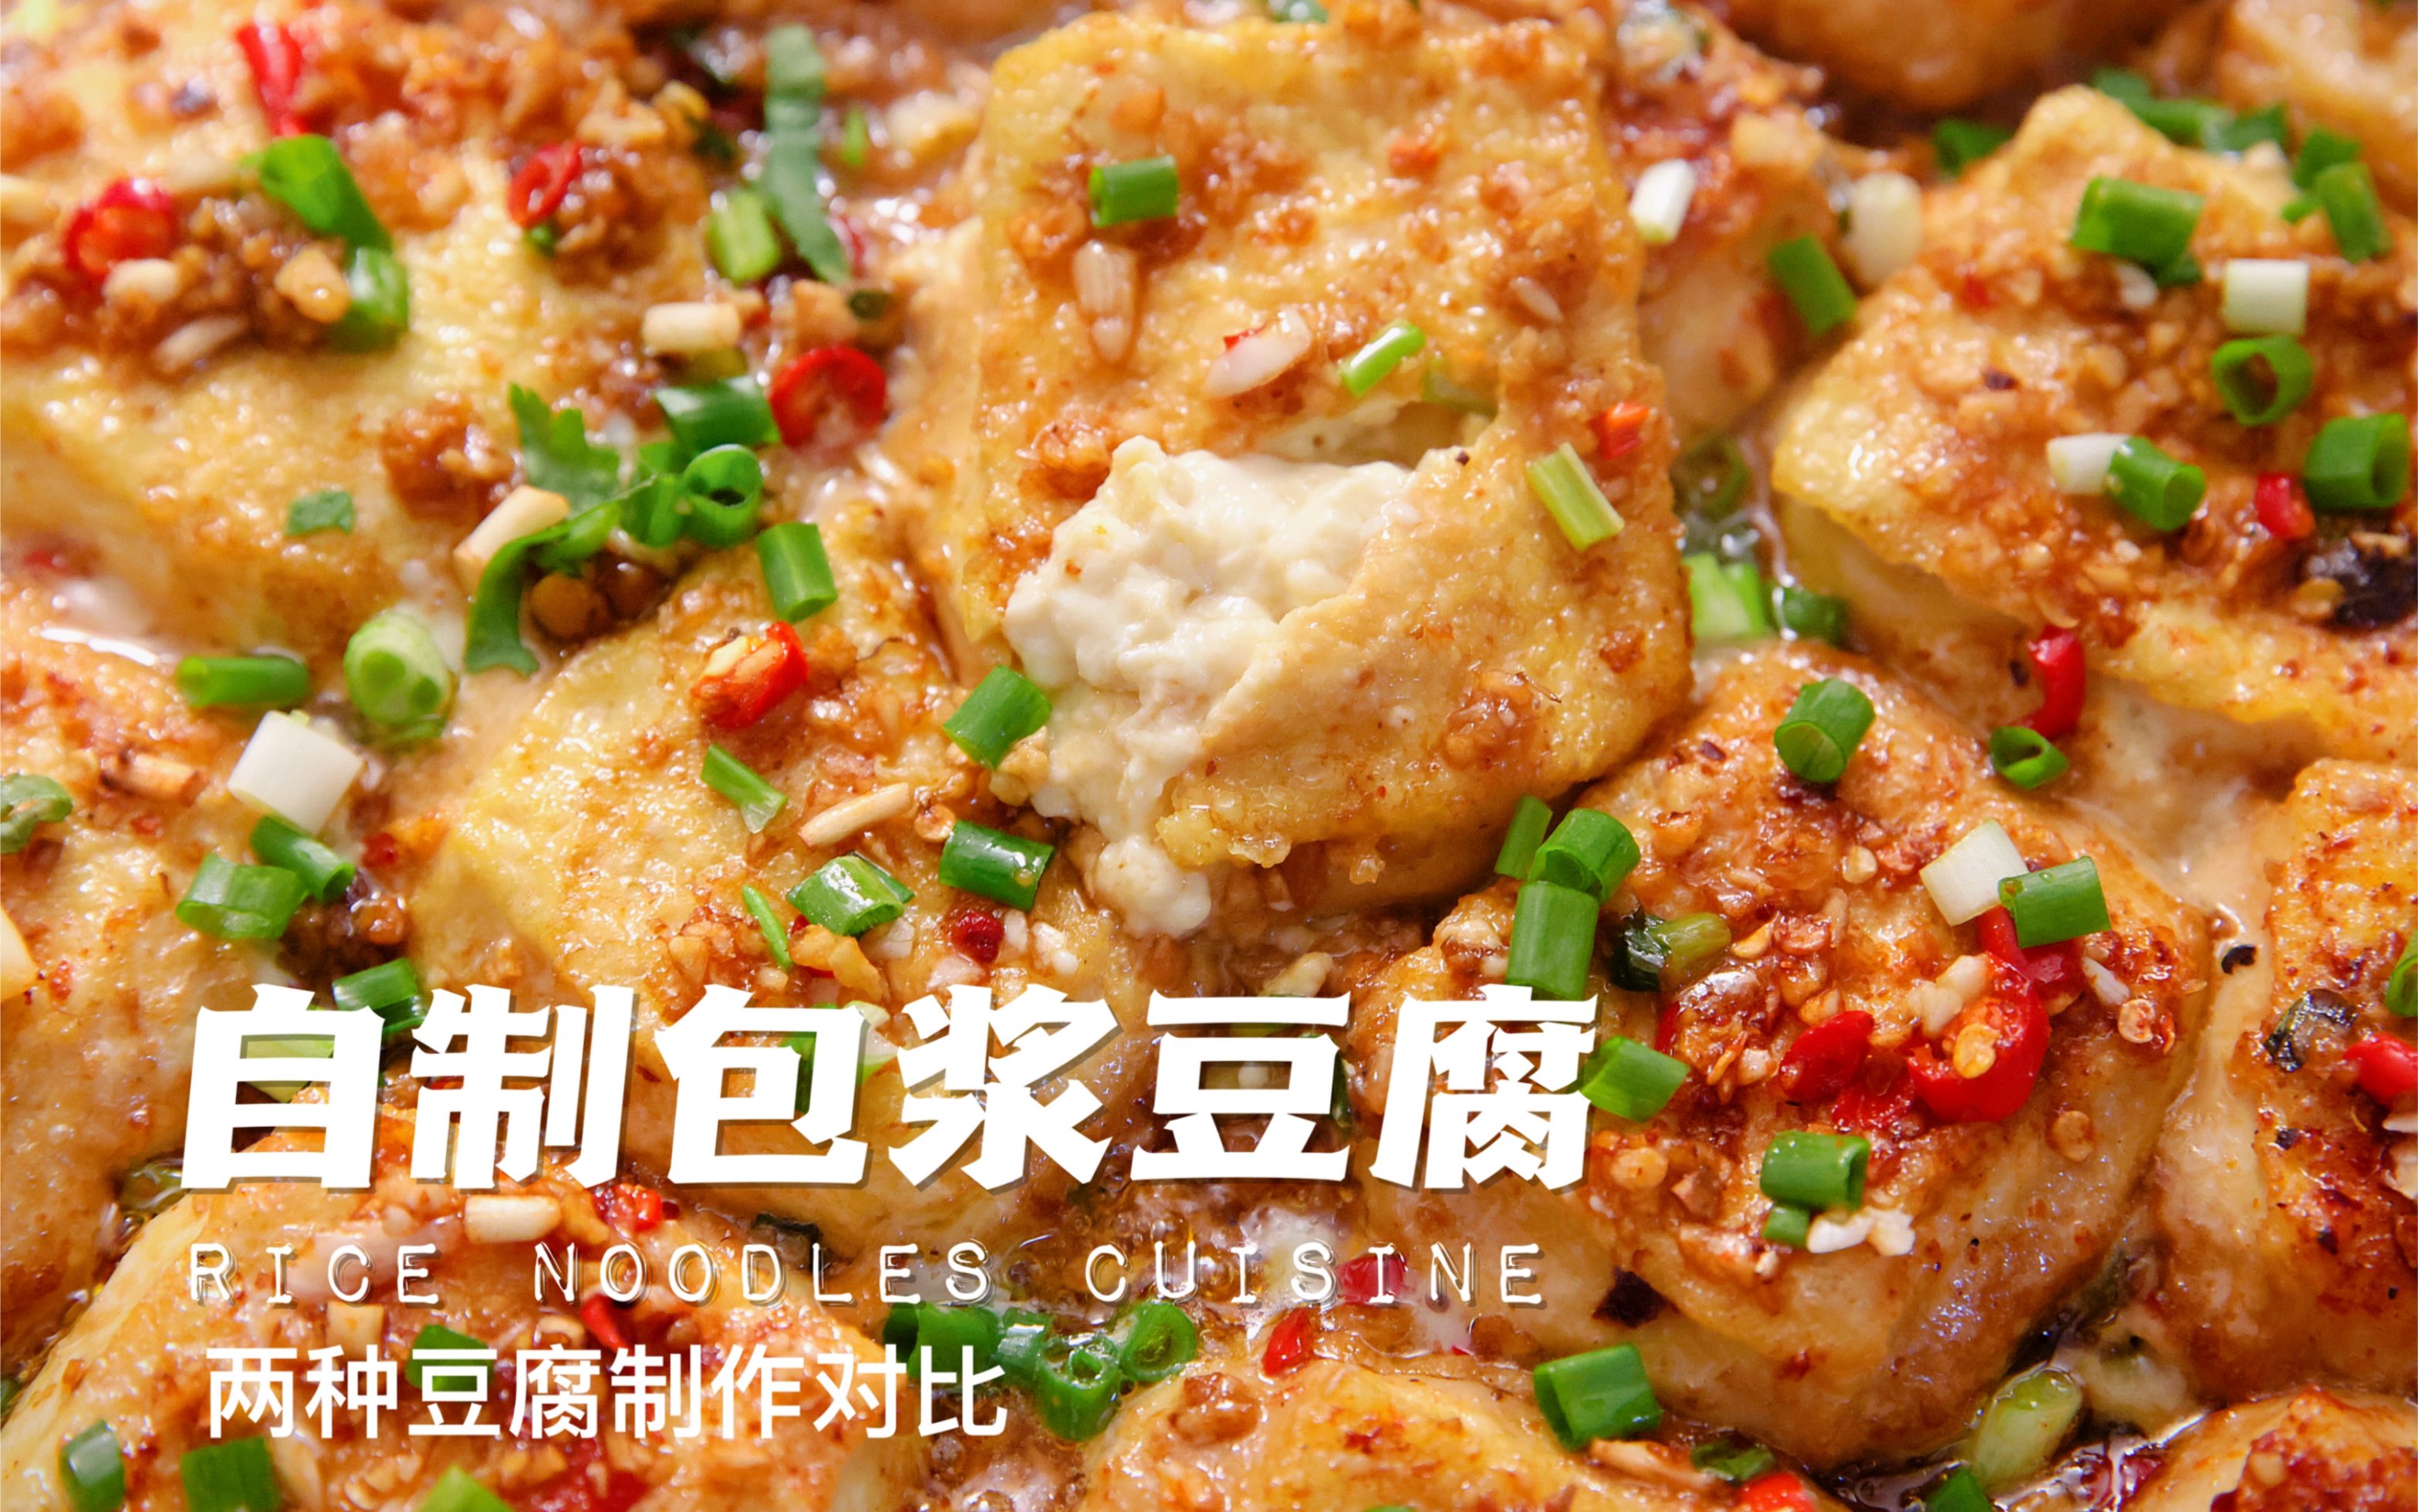 昭通小牛肉傣味五花肉碳烤包浆豆腐 广州街头的云南夜晚|界面新闻